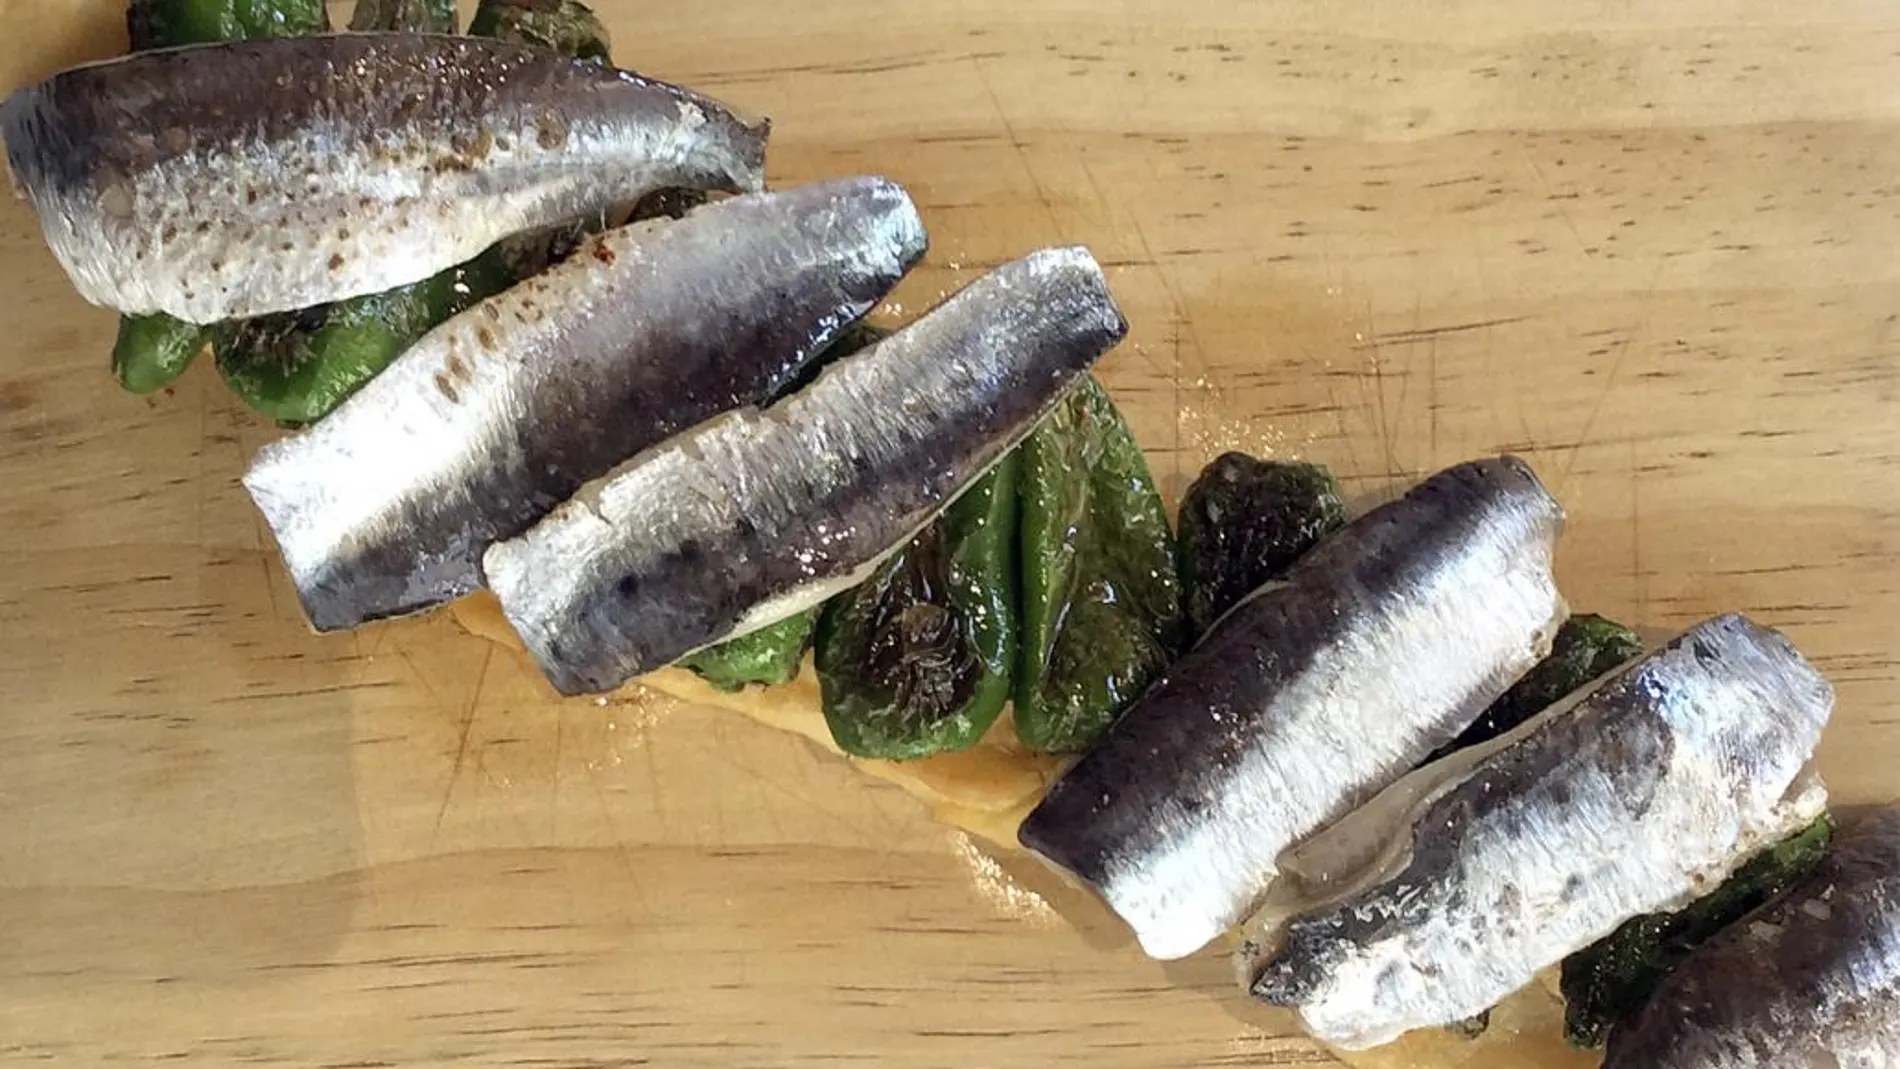 La sardina asada representa, en el imaginario gastrónomo, la quintaesencia del chiringuito primigenio